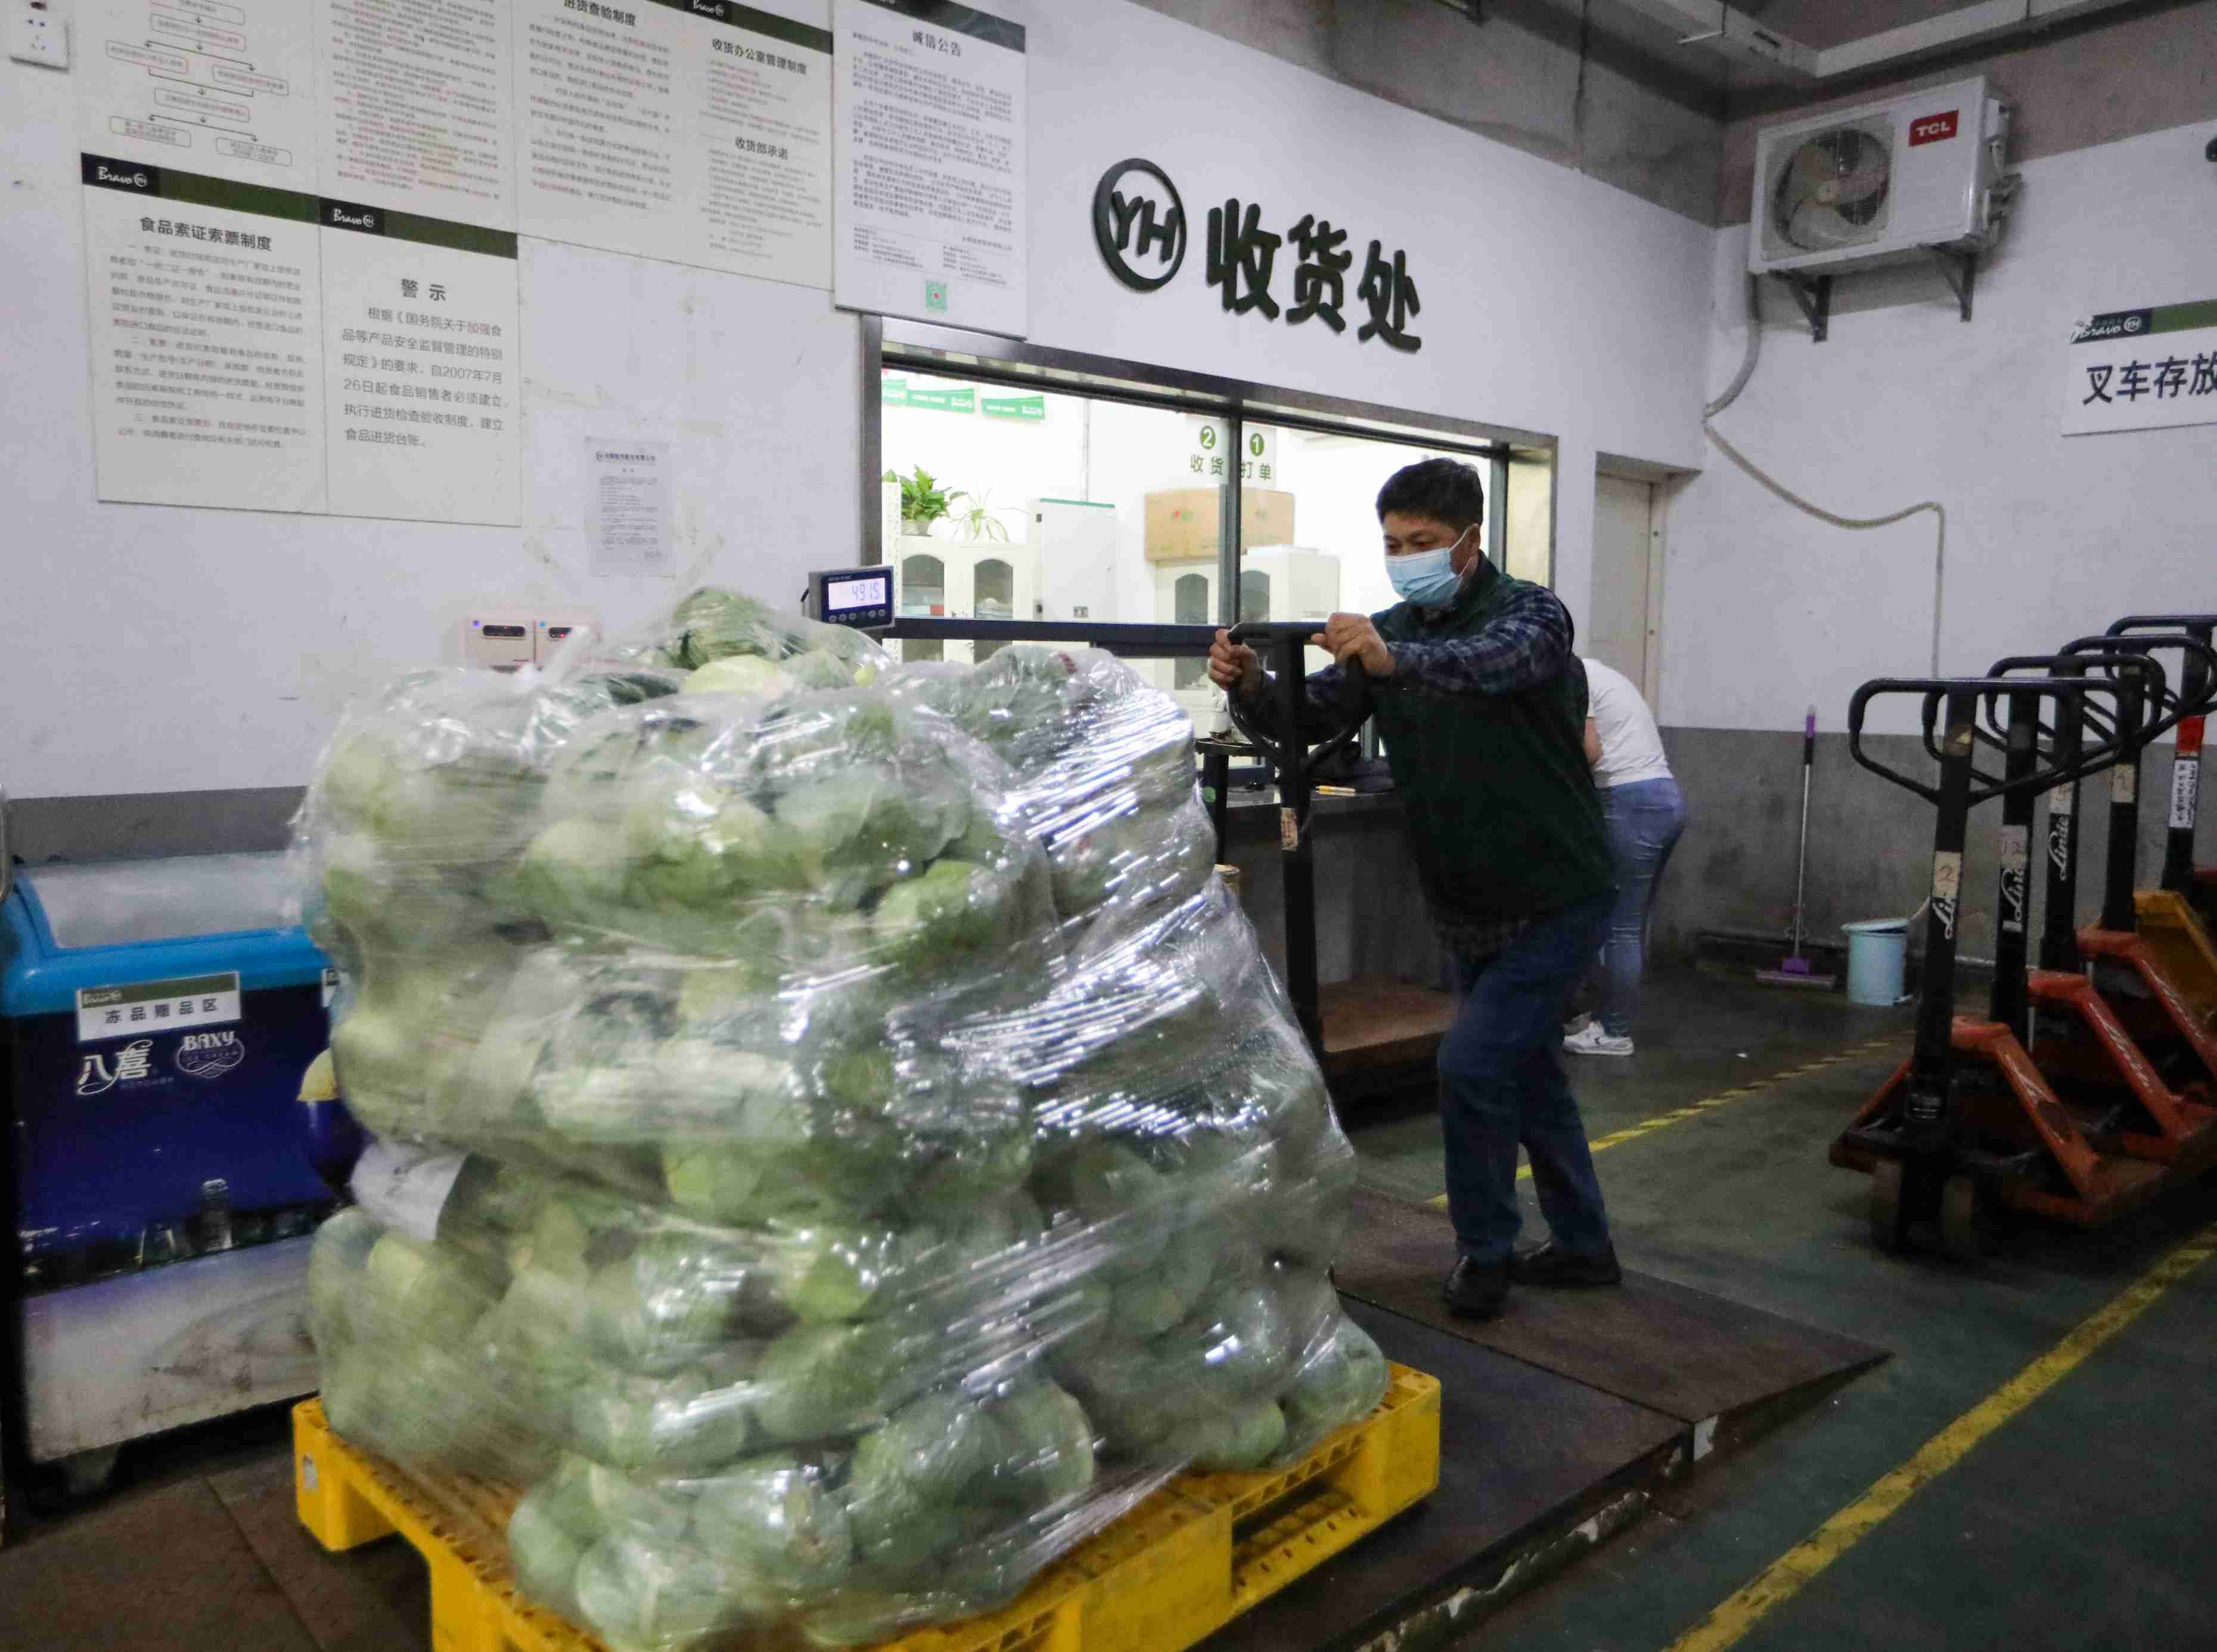 永輝超市工作人員正在轉運蔬菜。